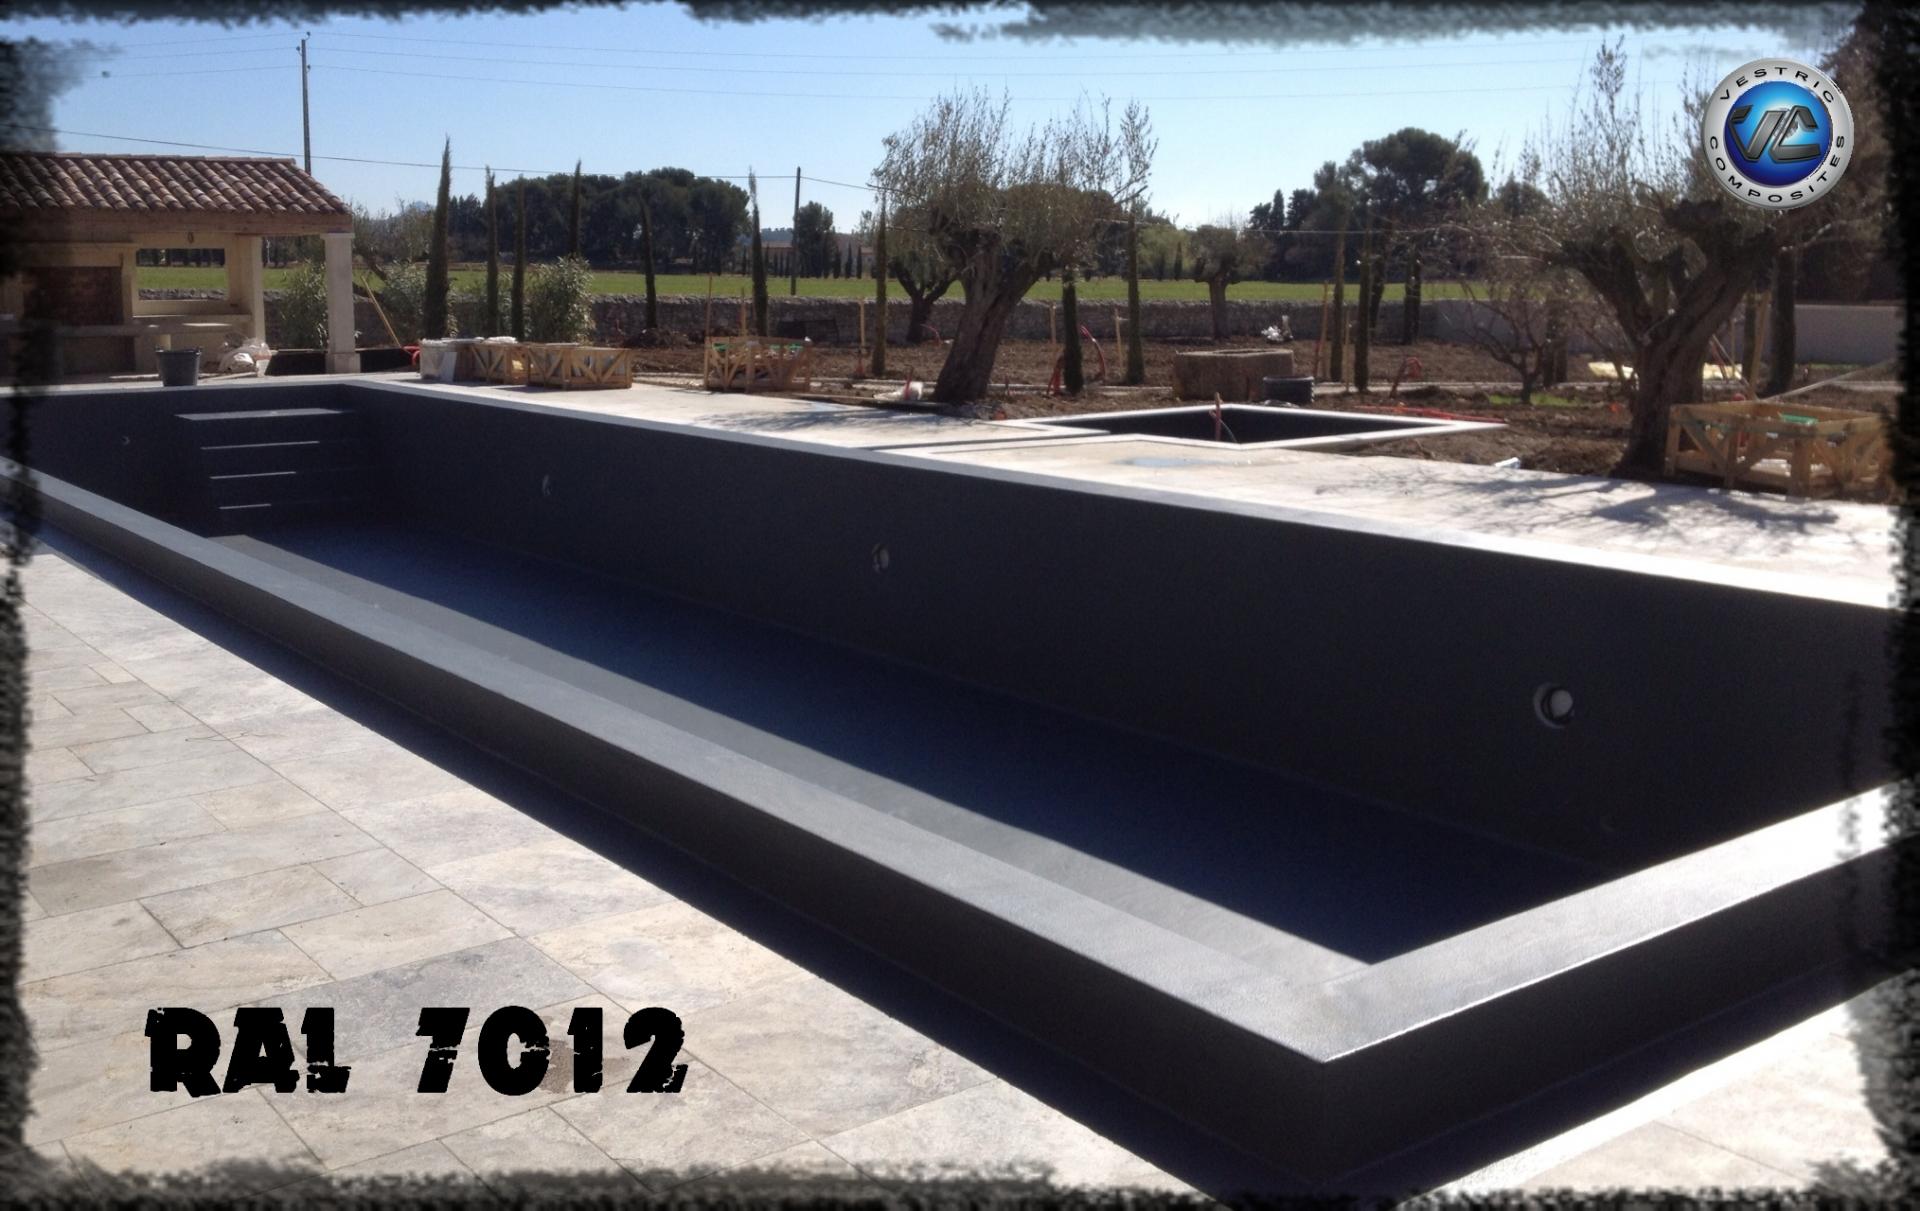 Ral 7012 couleur gris balzate anthracite piscine en eau vestric composites 3